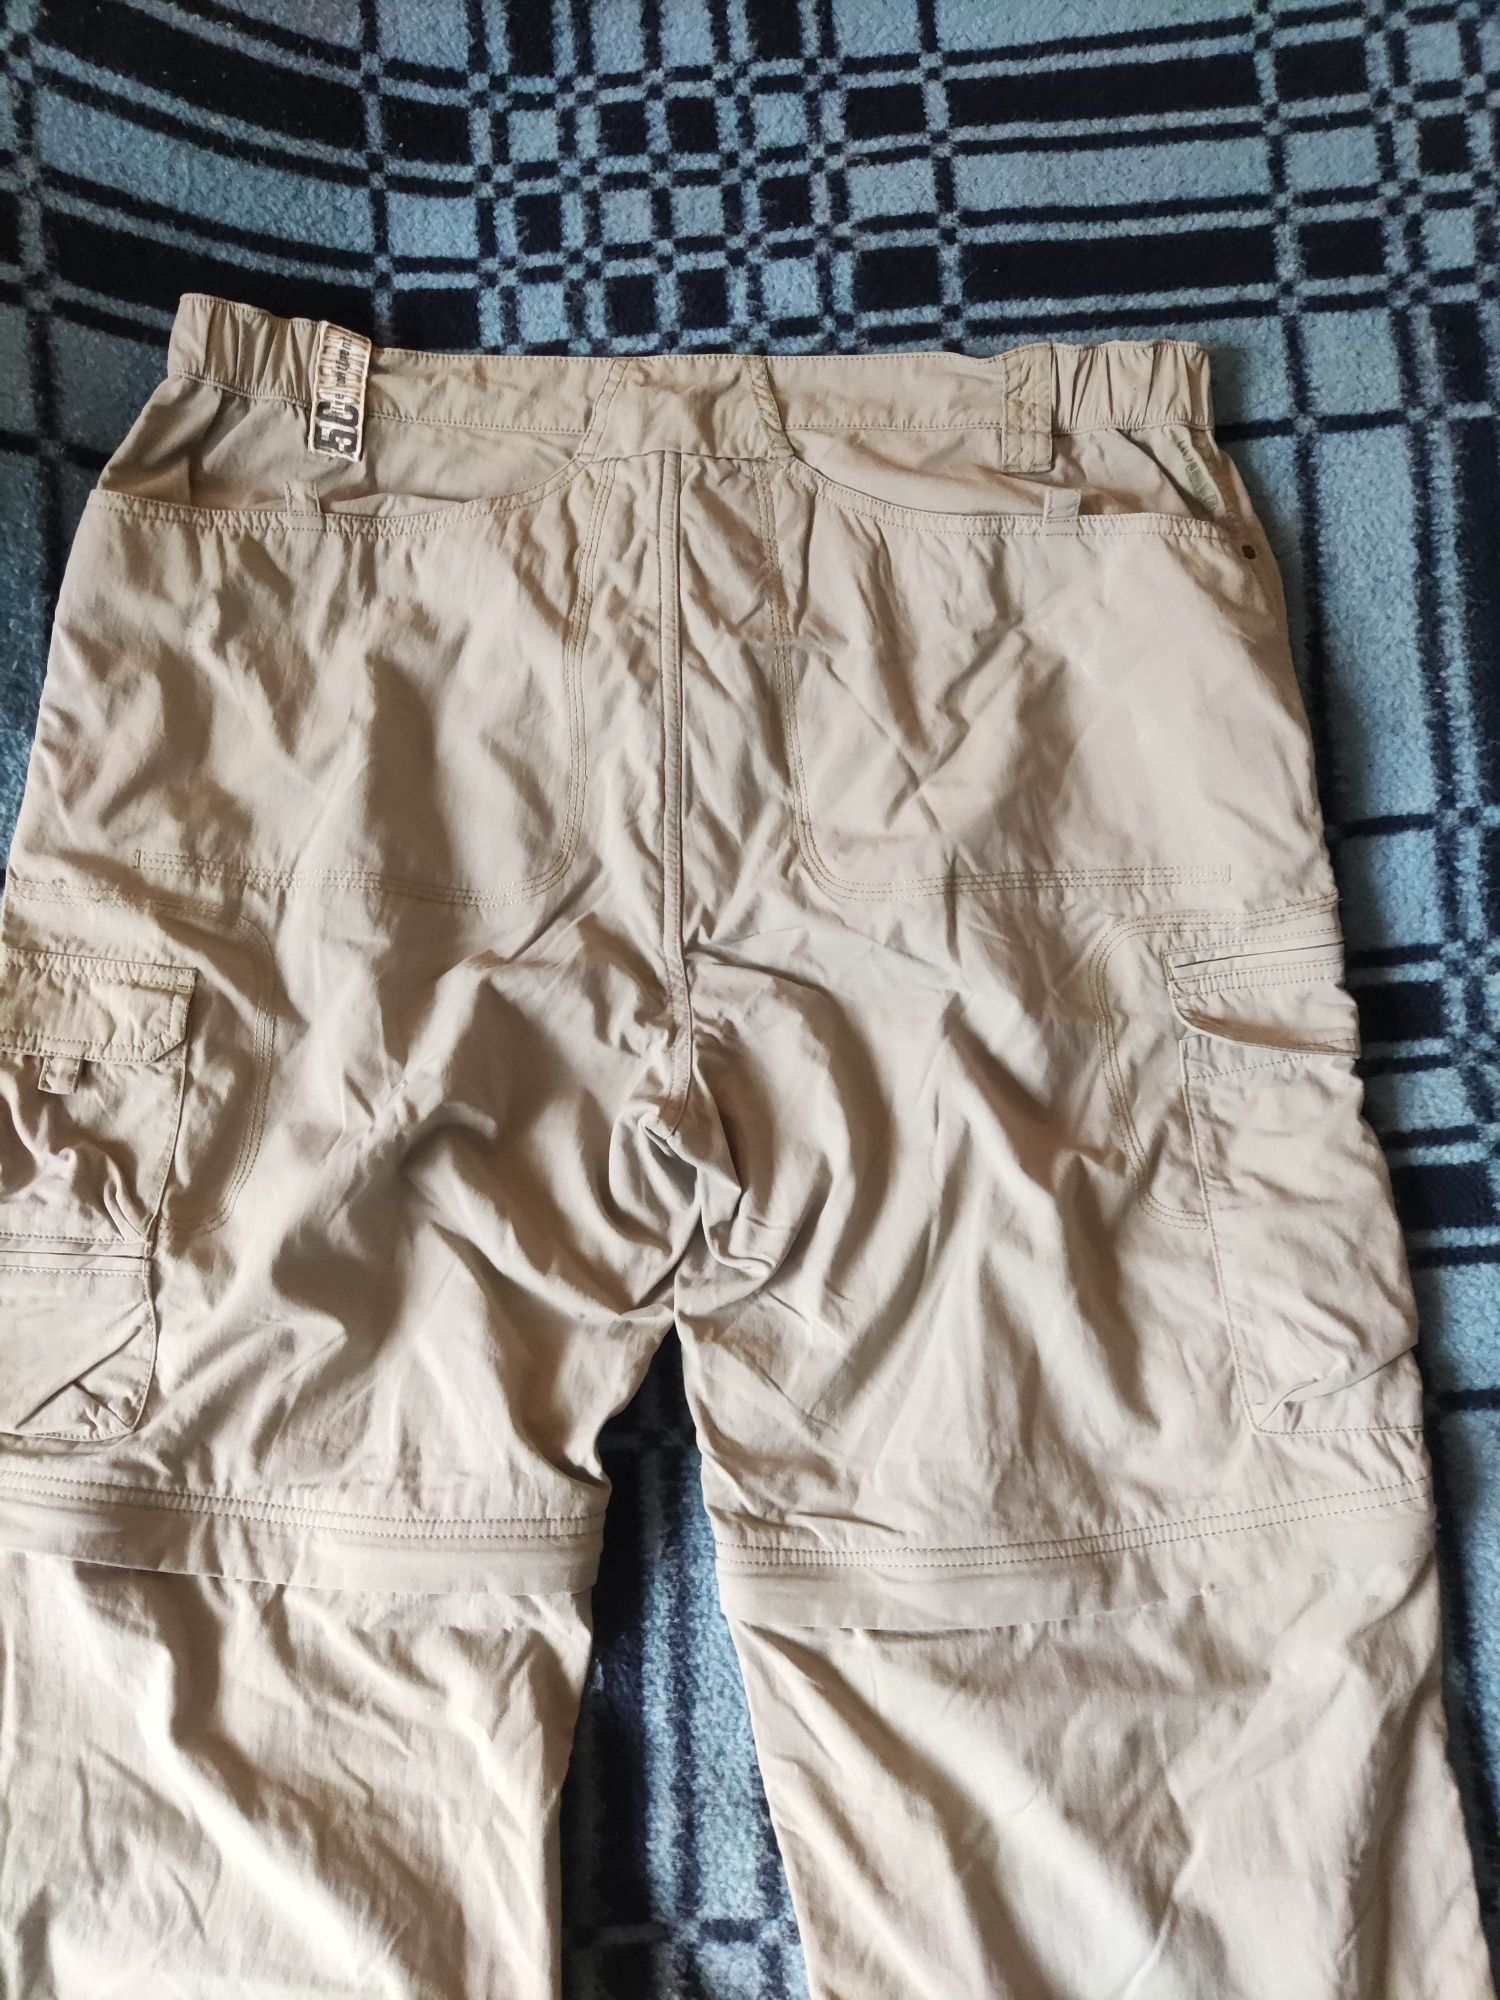 Spodnie Trekkingowe Bojówki Salewa odpinane nogawki

Rozmiar XXXL

Sta